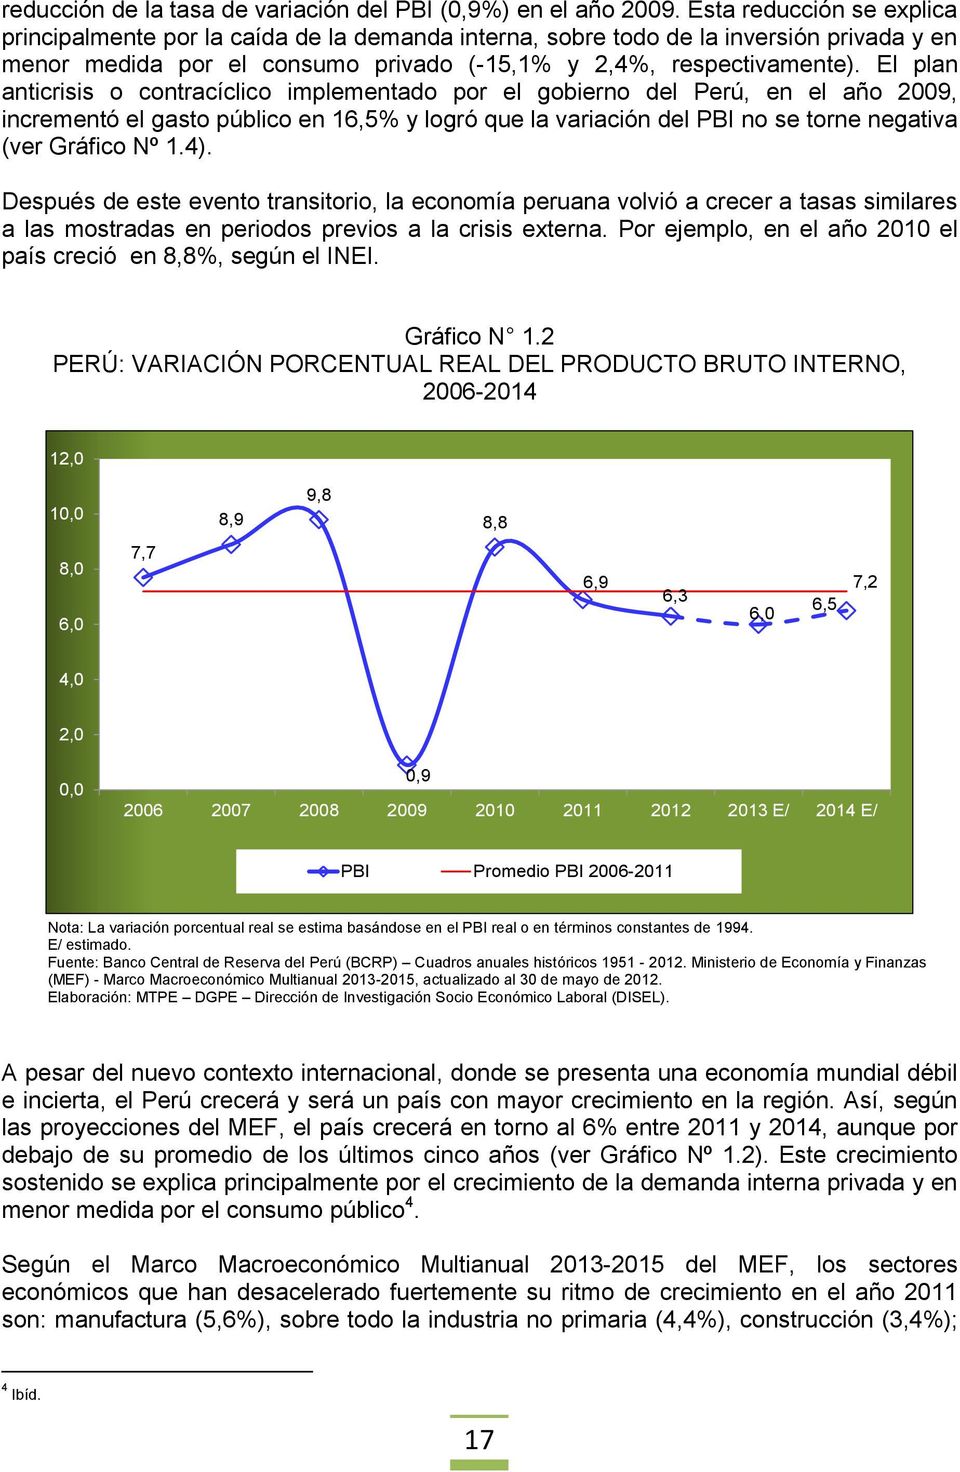 El plan anticrisis o contracíclico implementado por el gobierno del Perú, en el año 2009, incrementó el gasto público en 16,5% y logró que la variación del PBI no se torne negativa (ver Gráfico Nº 1.